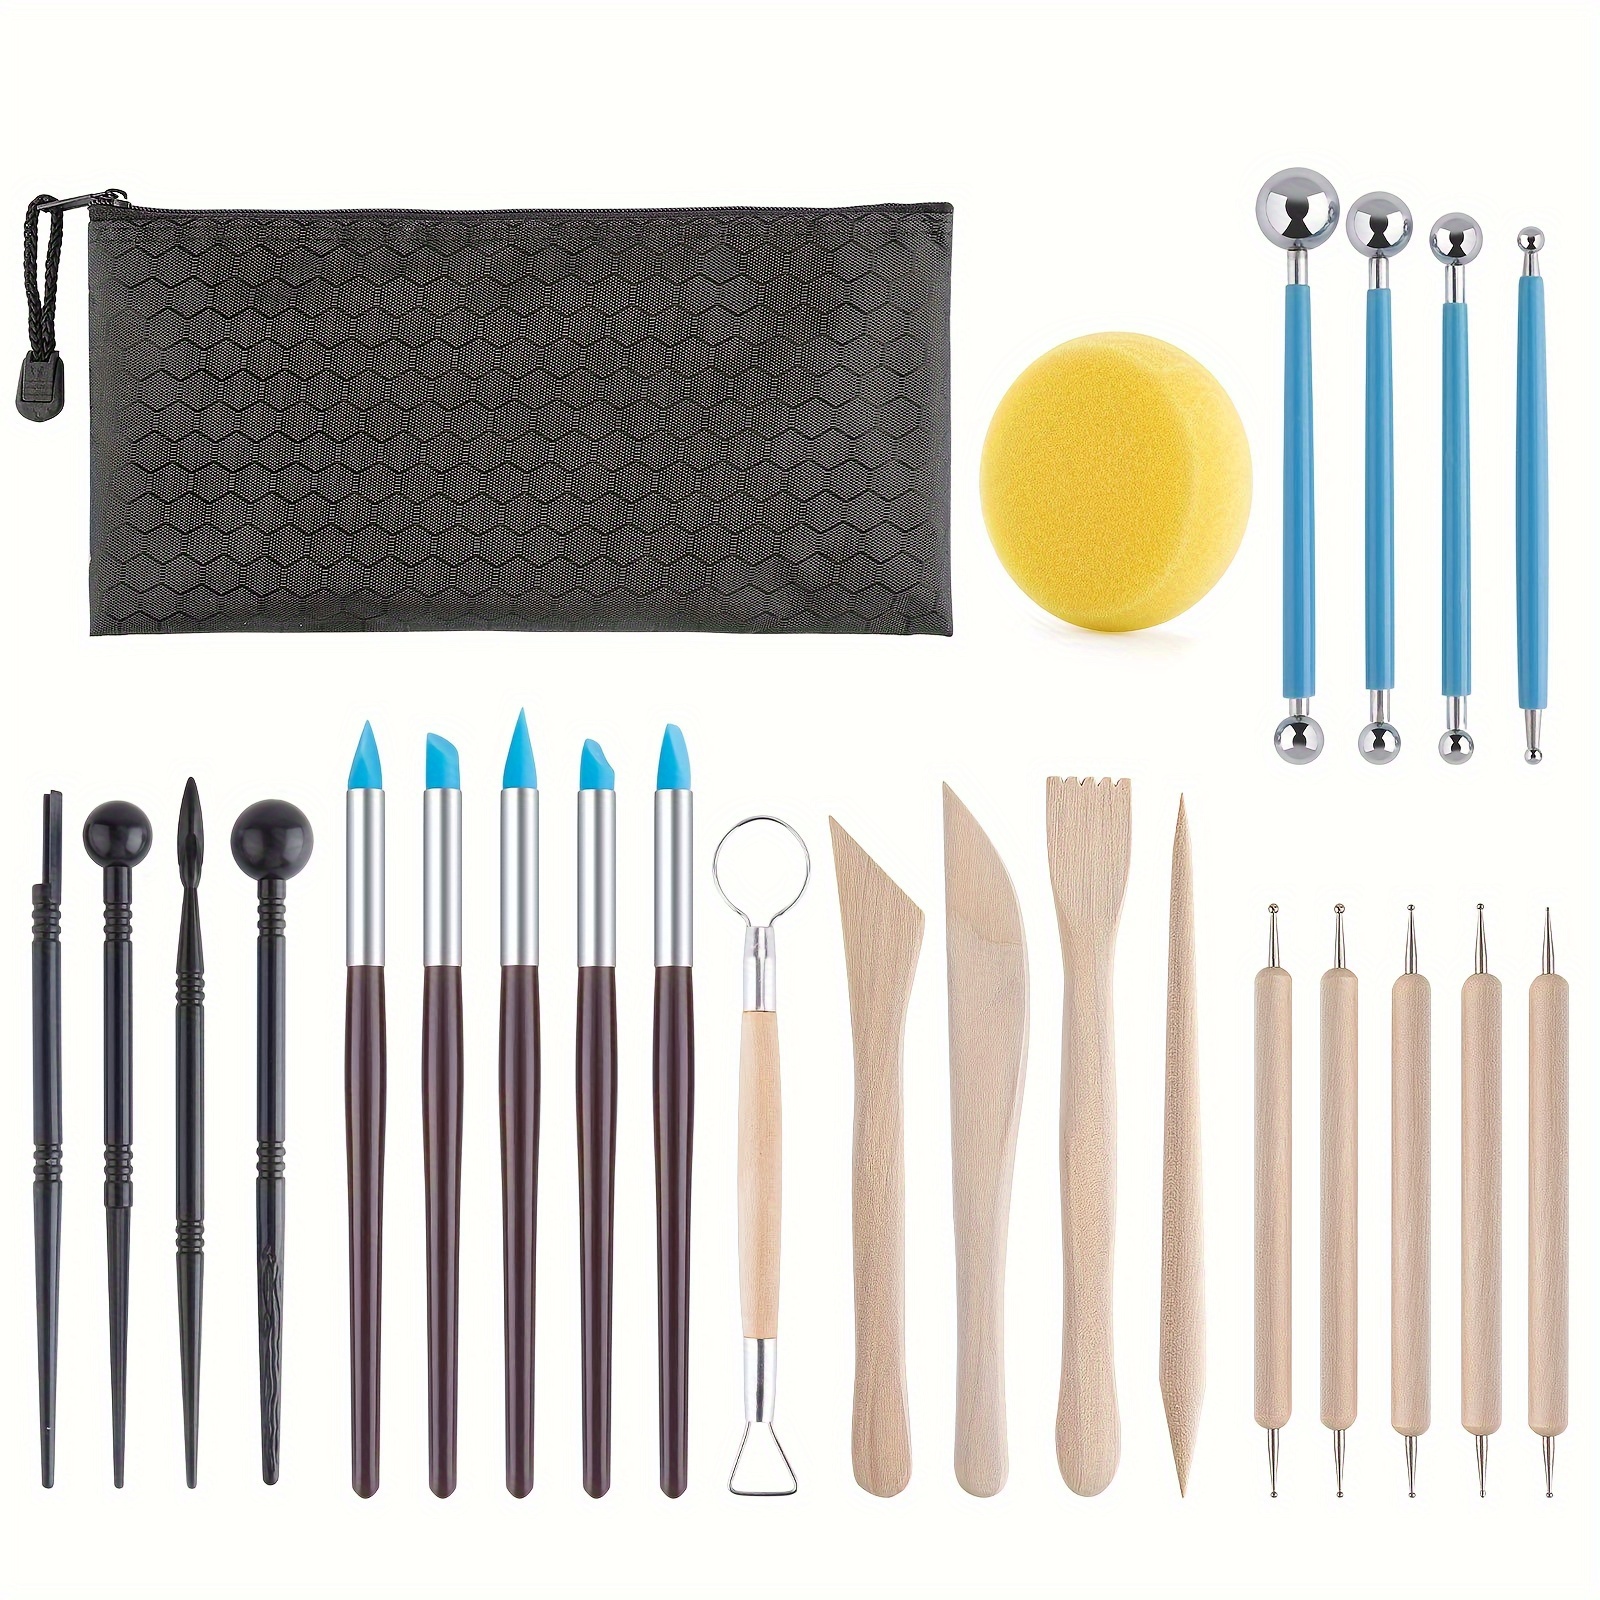 Paquete de 35 herramientas de arcilla, herramientas de cerámica y  herramientas de escultura, cortador de arcilla para modelar polímeros,  juego de